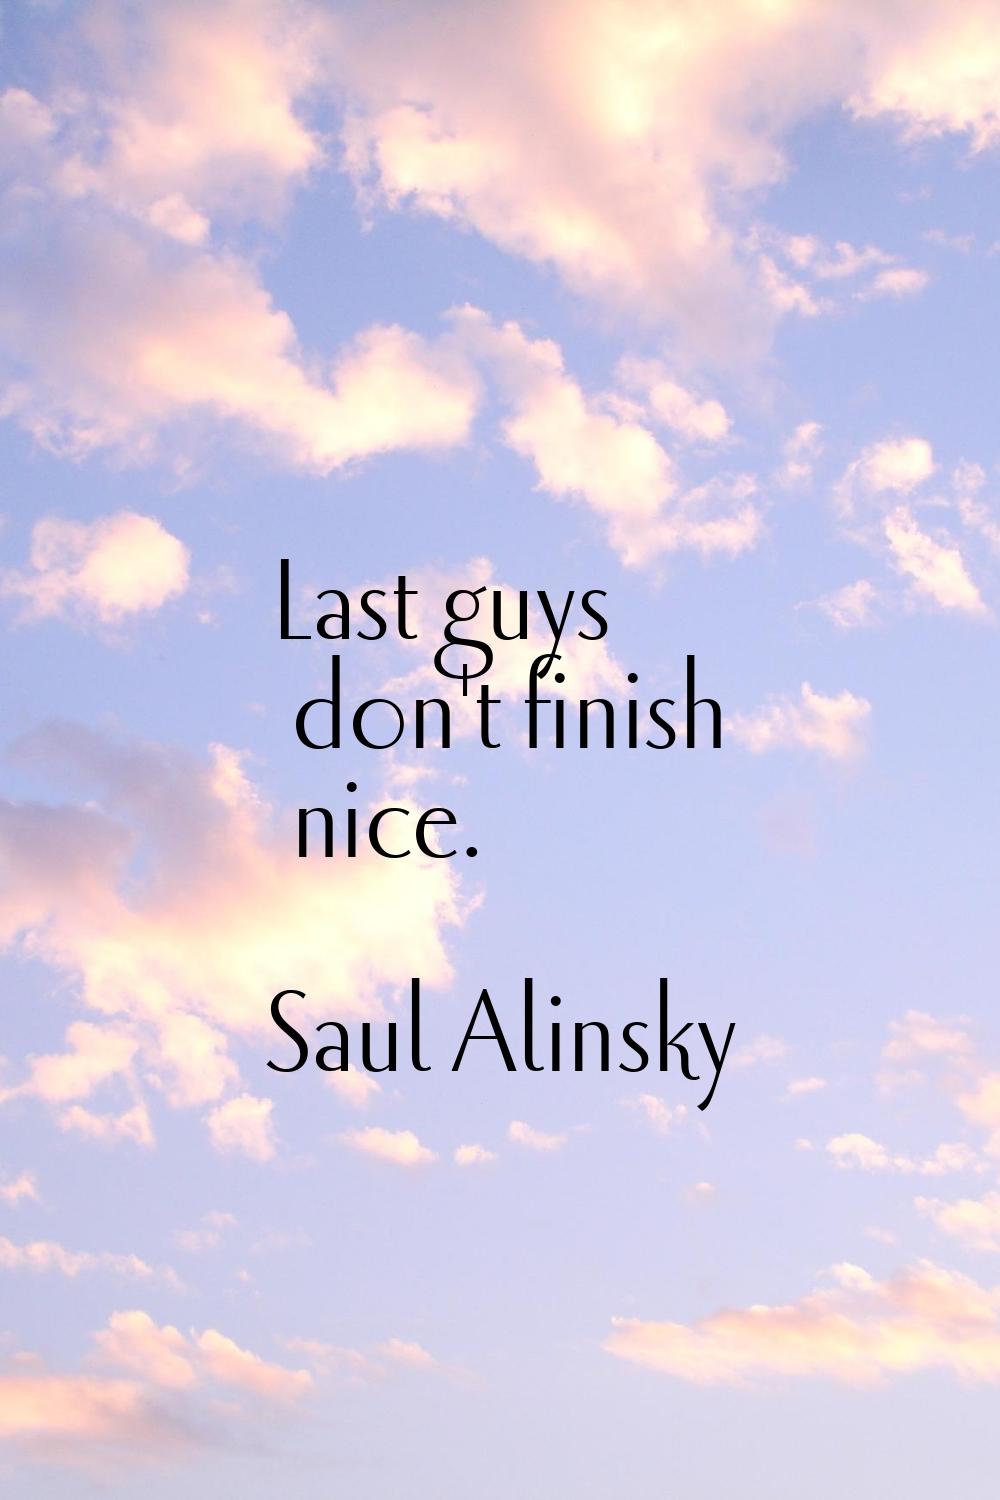 Last guys don't finish nice.